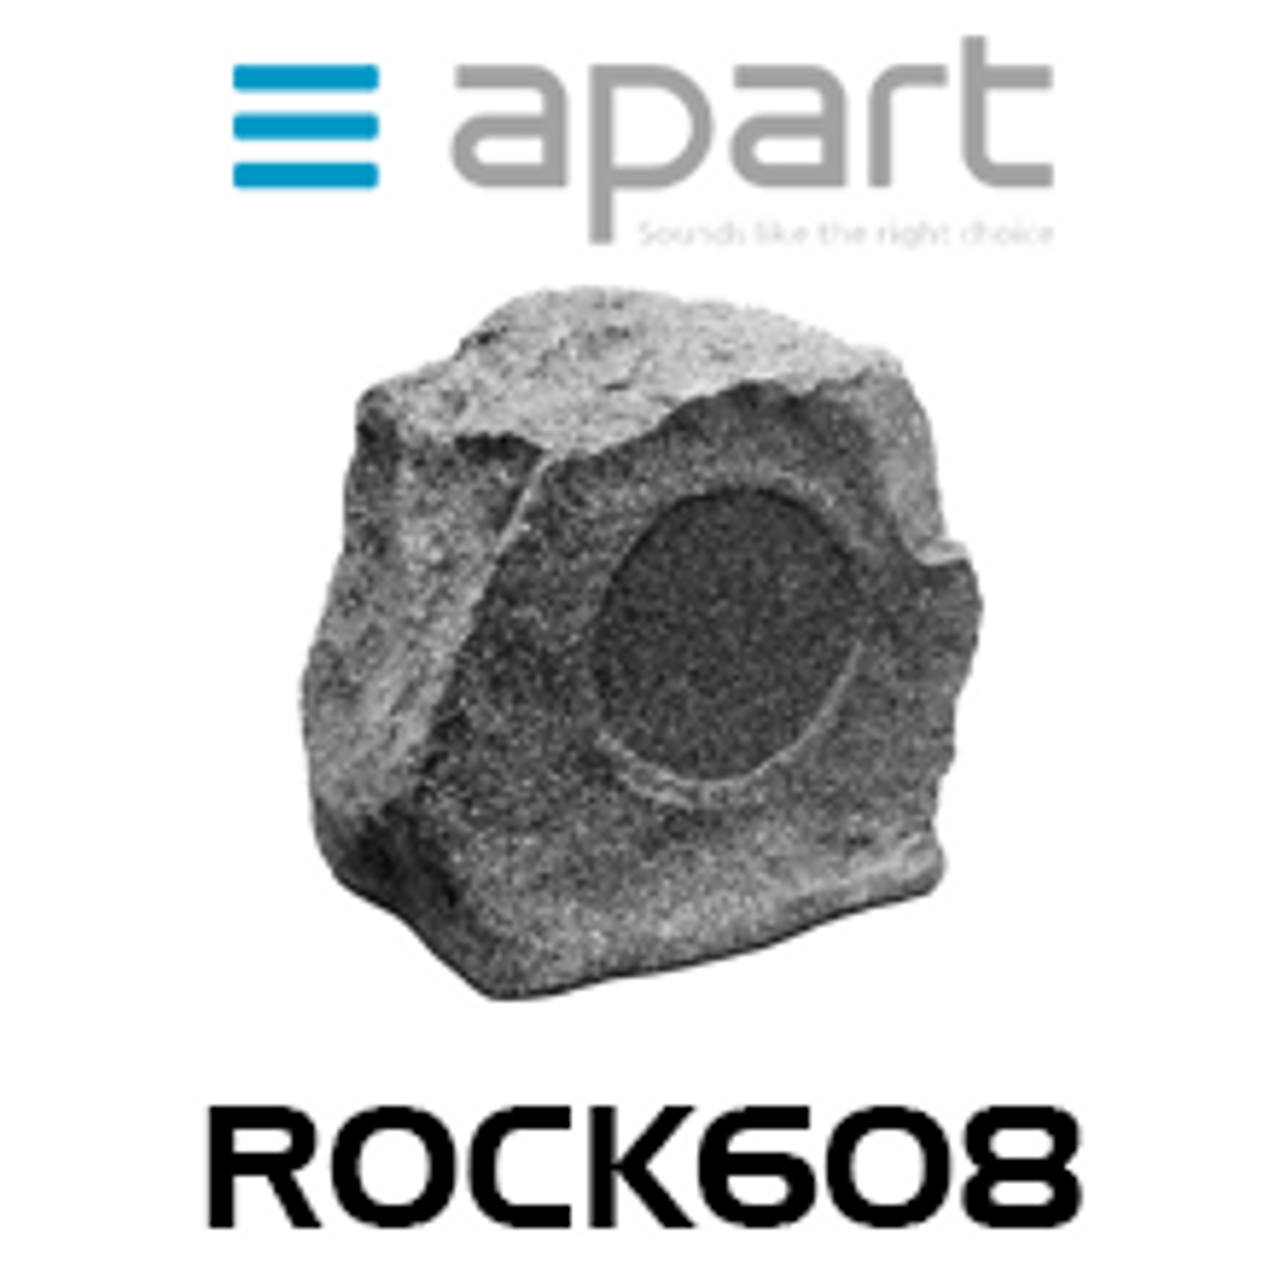 Apart Rock608 6.5" Weatherproof Outdoor Rock Speaker (Each)